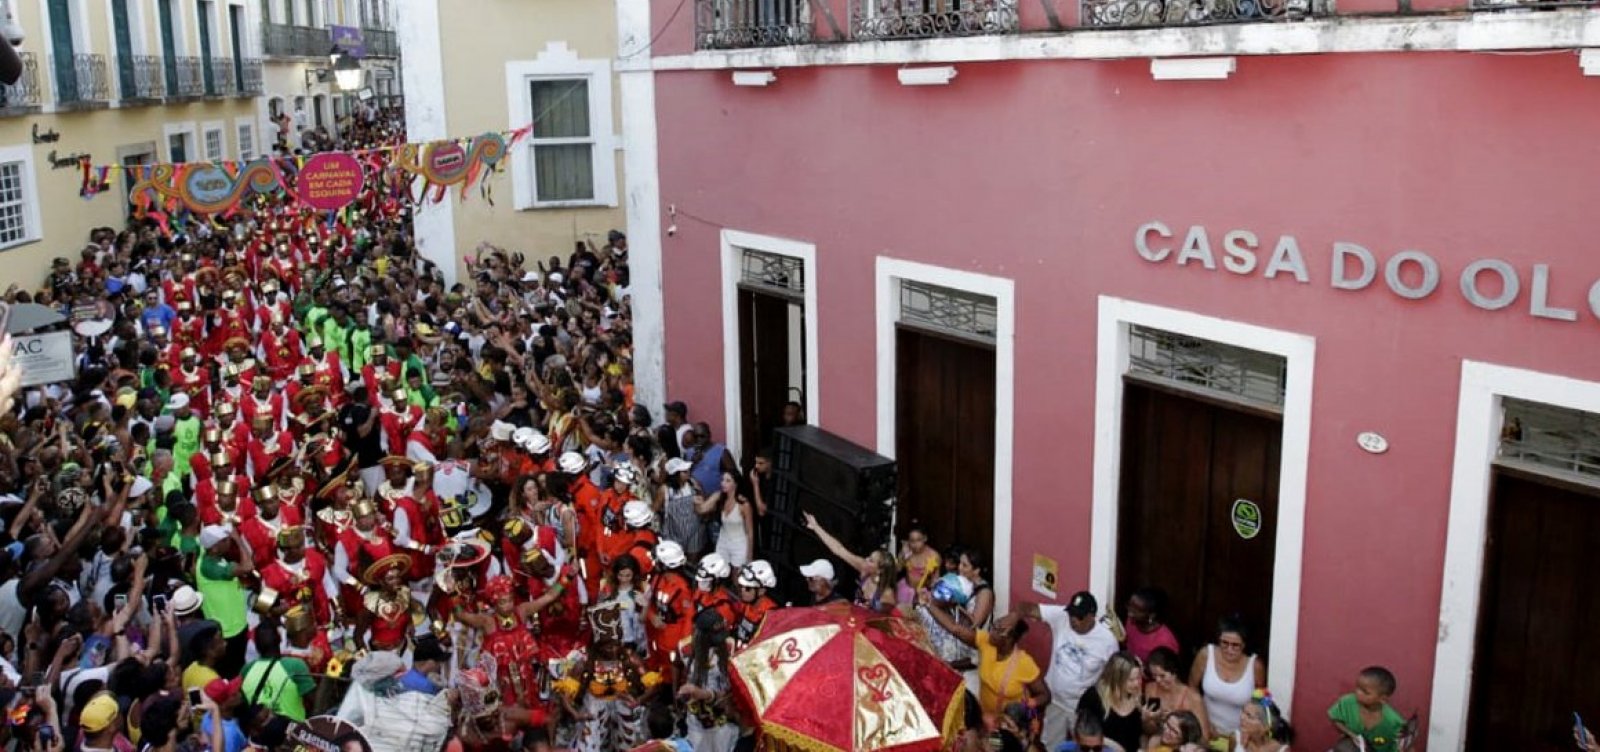 Circuitos do Carnaval de Salvador receberão fiscalização do Iphan